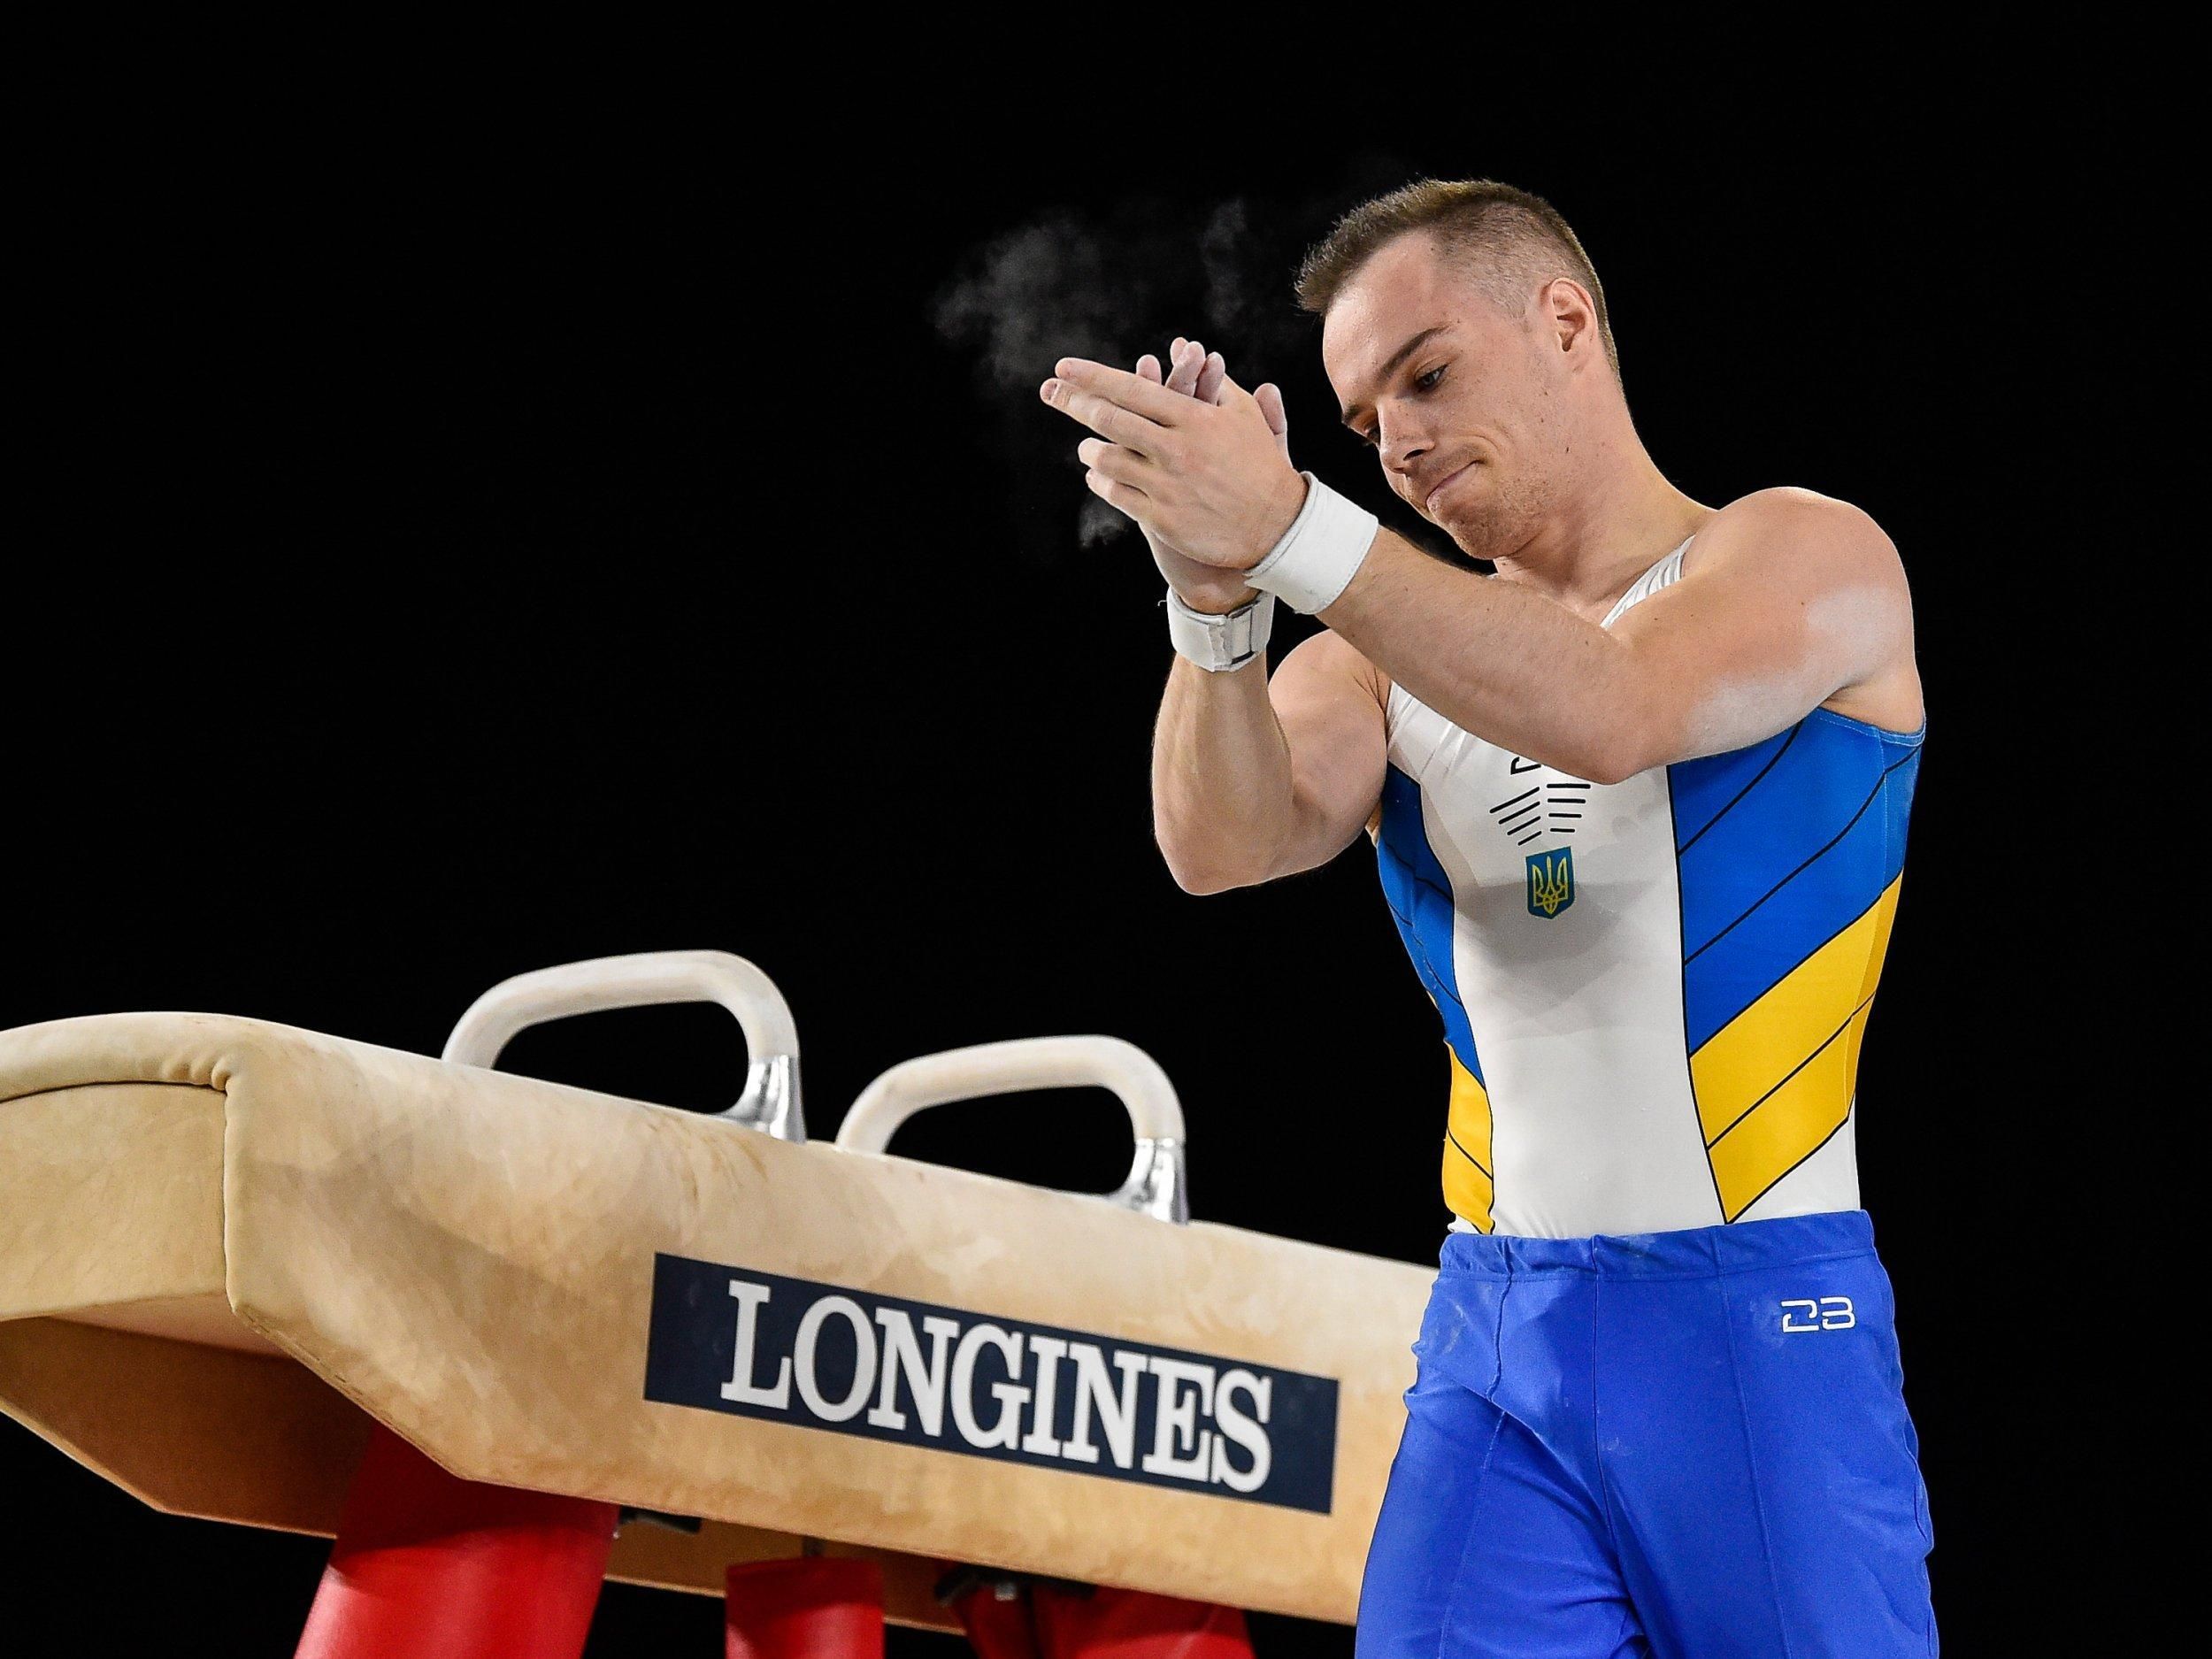 Сменил брусья на оружие: олимпийский чемпион Верняев будет защищать Украину - 24 канал Спорт